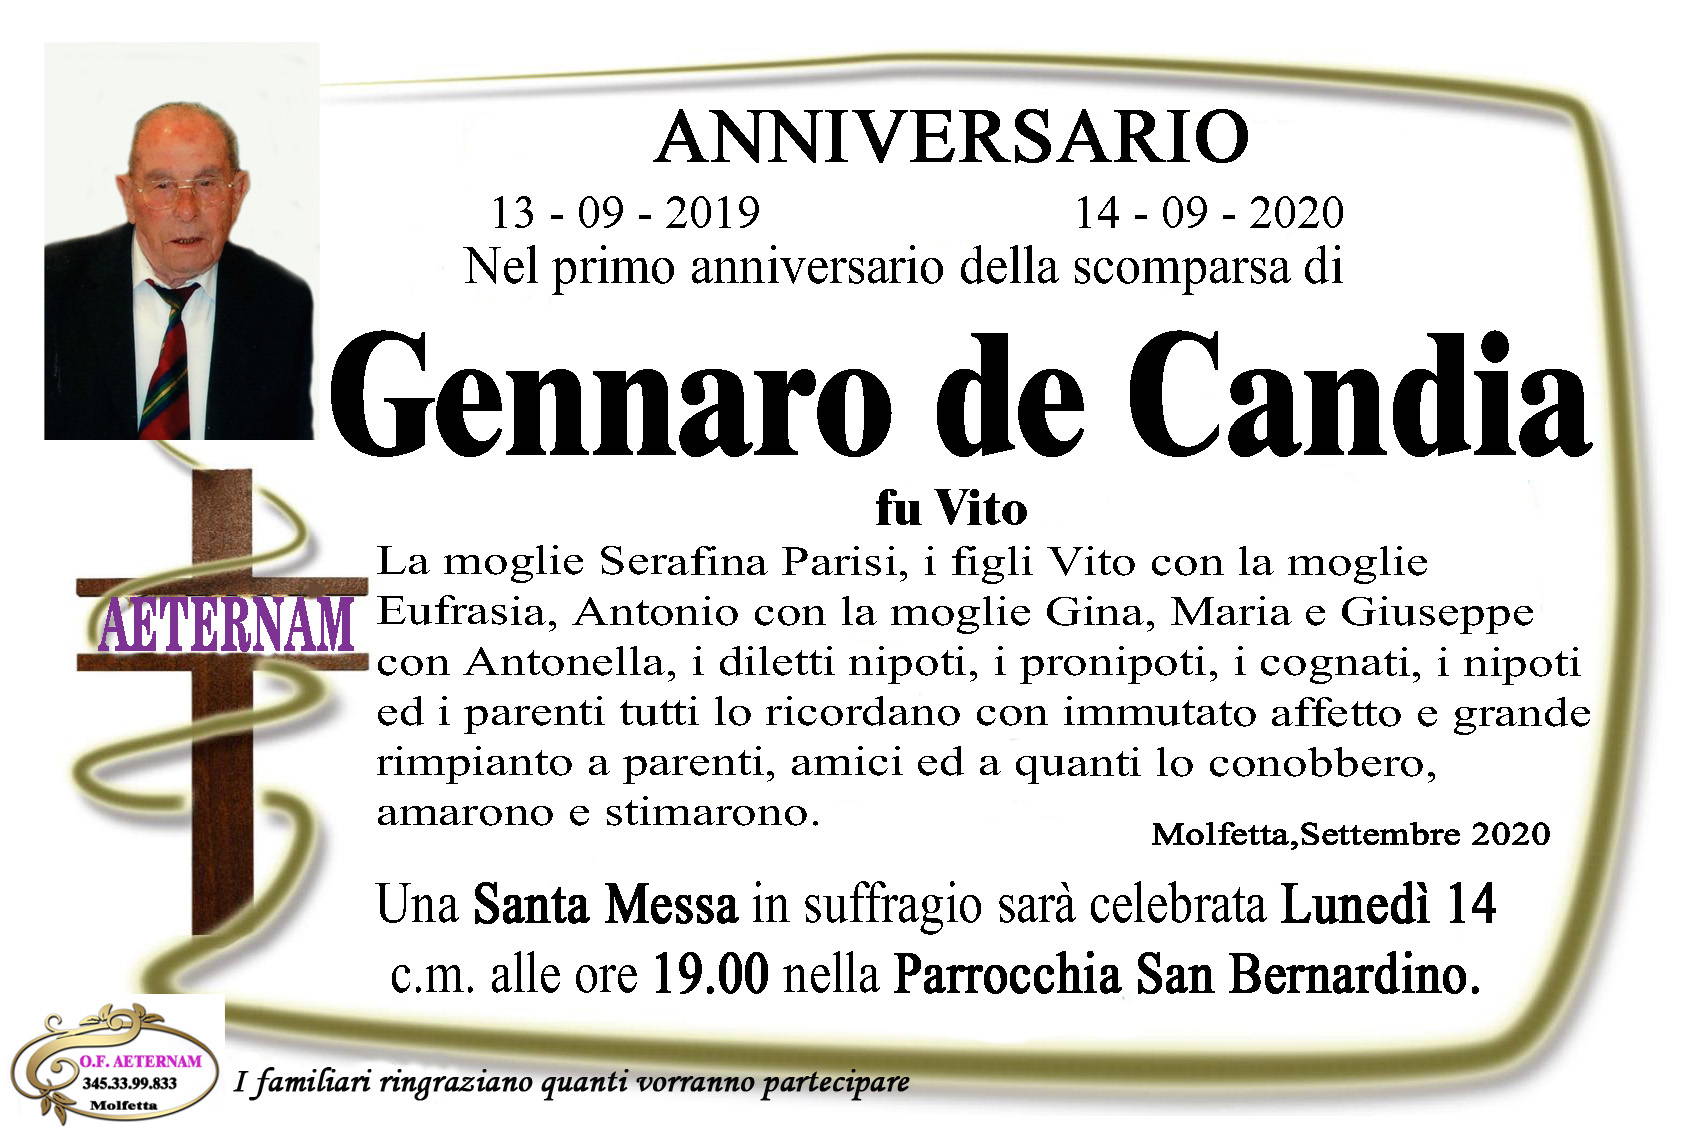 Gennaro De Candia